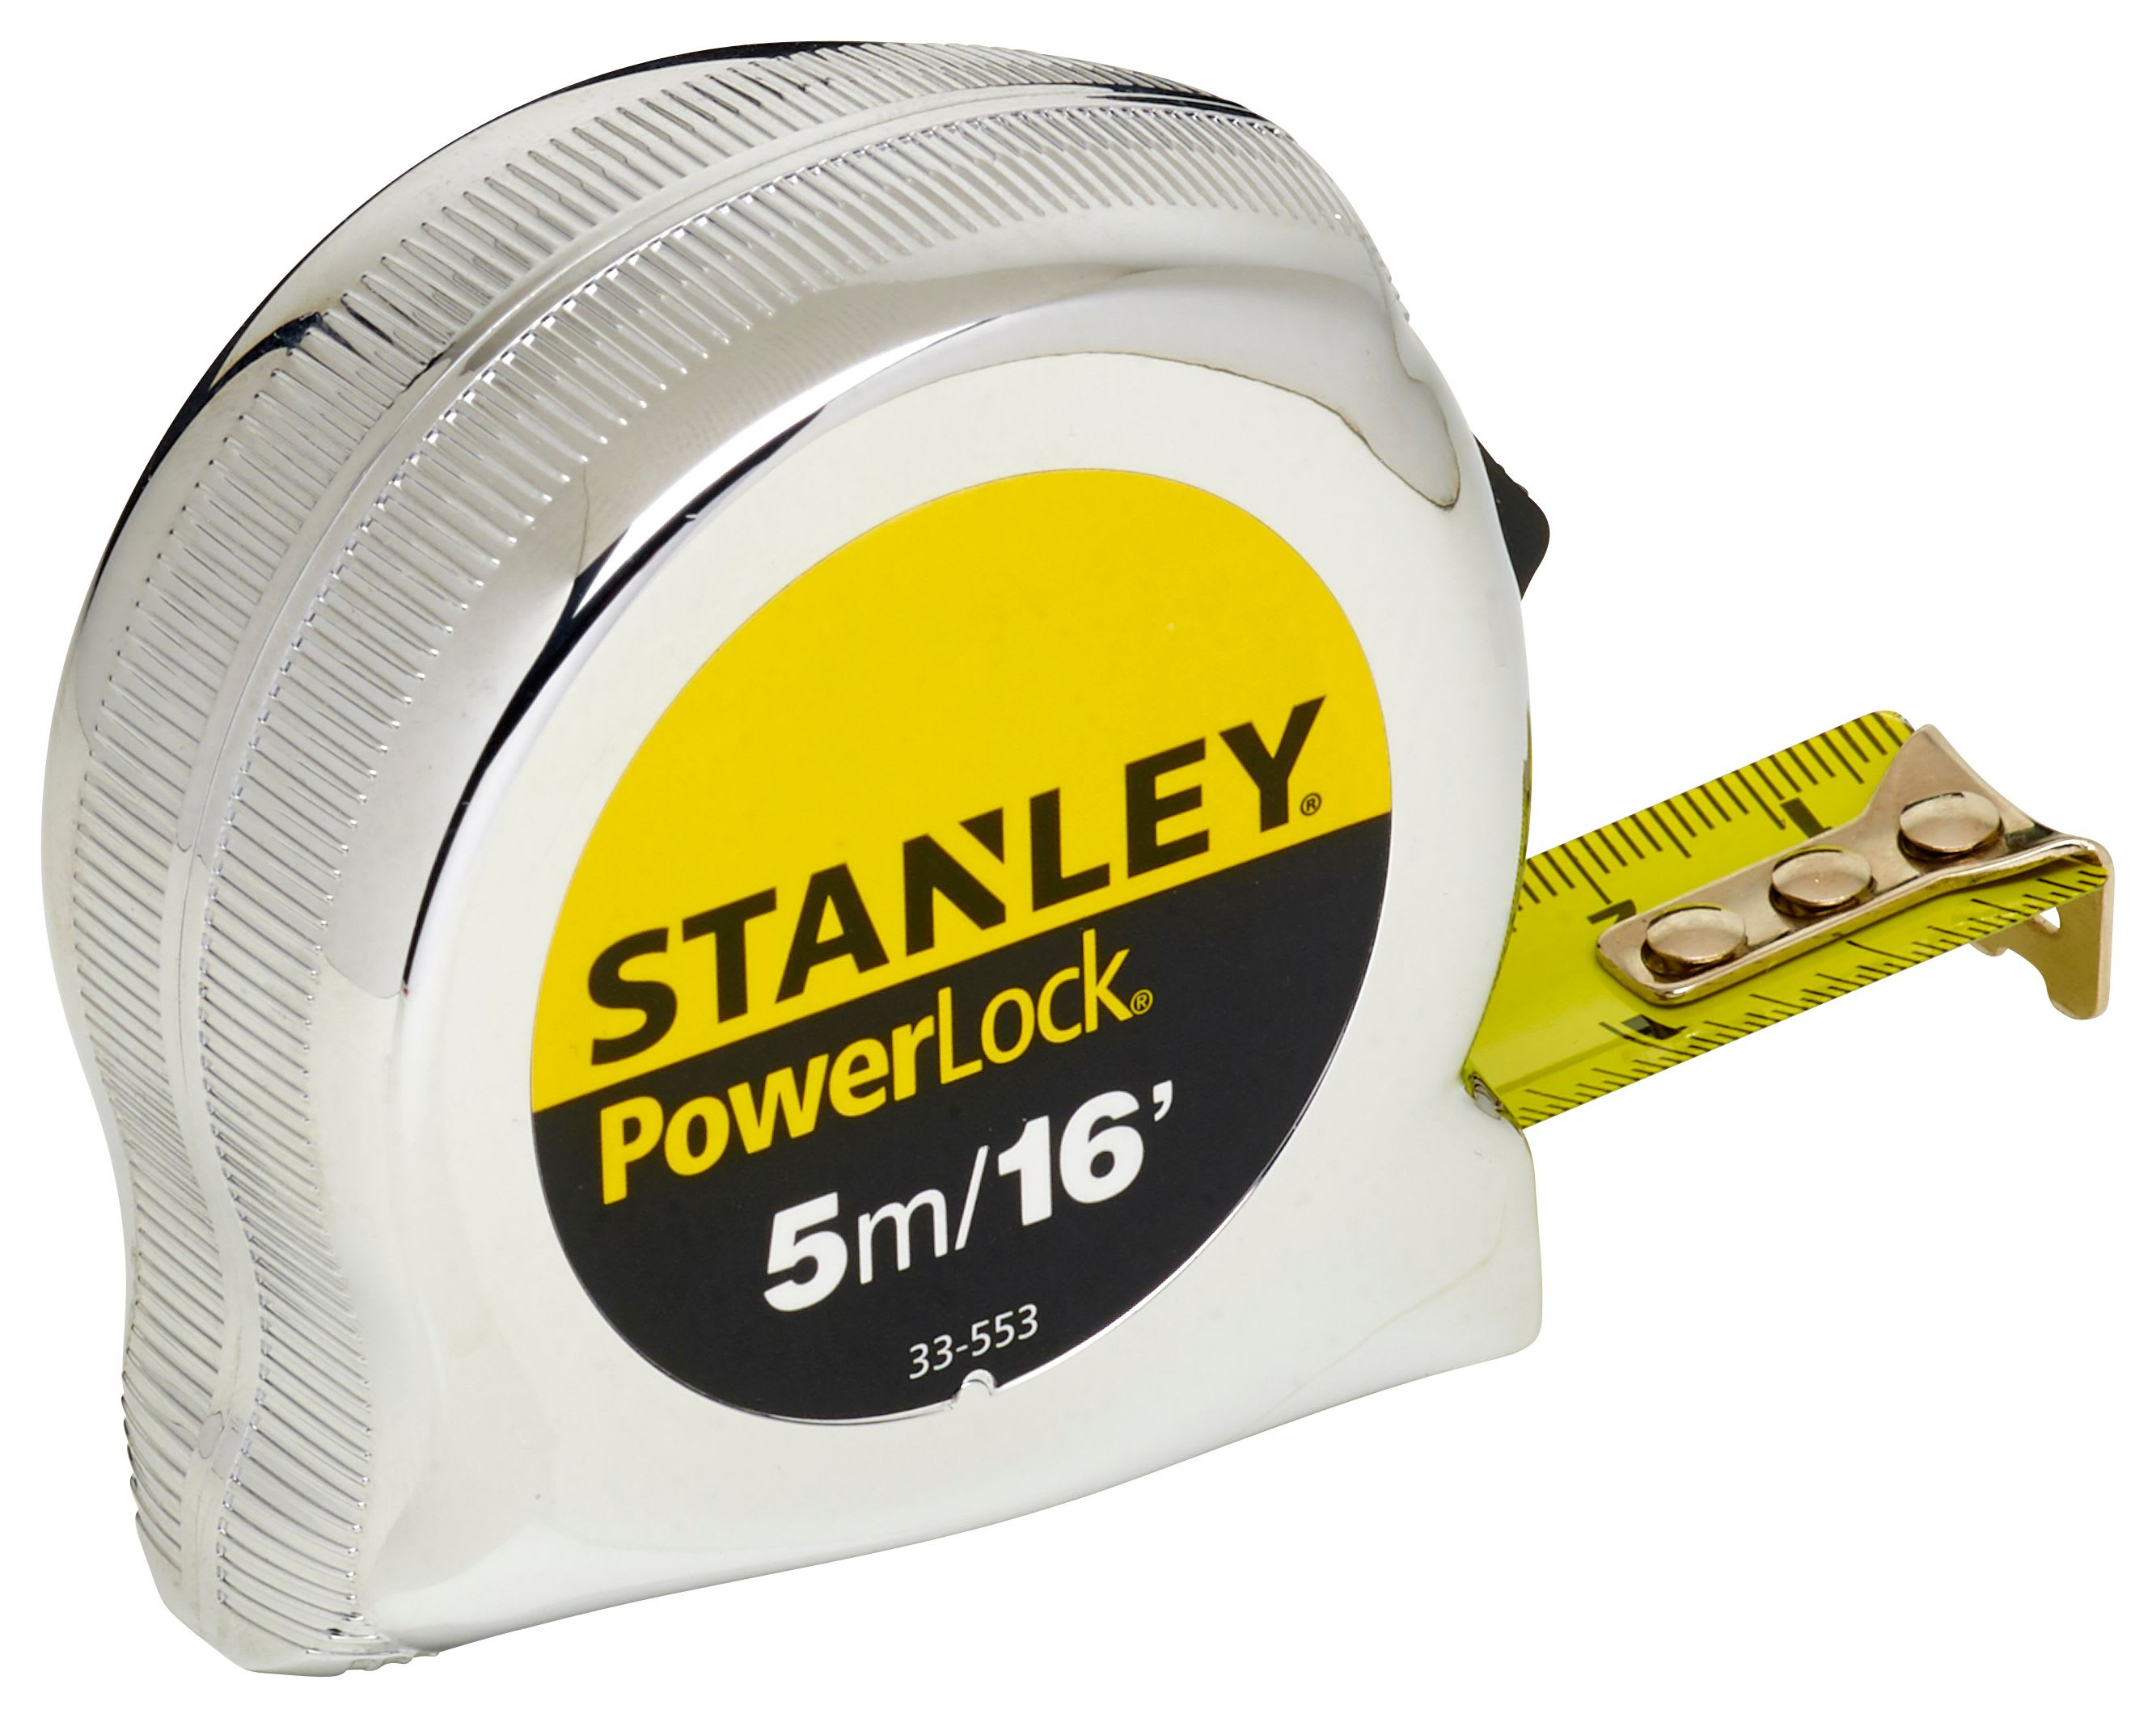 Stanley 0-33-553 Powerlock 19mm Tape Measure - 5m